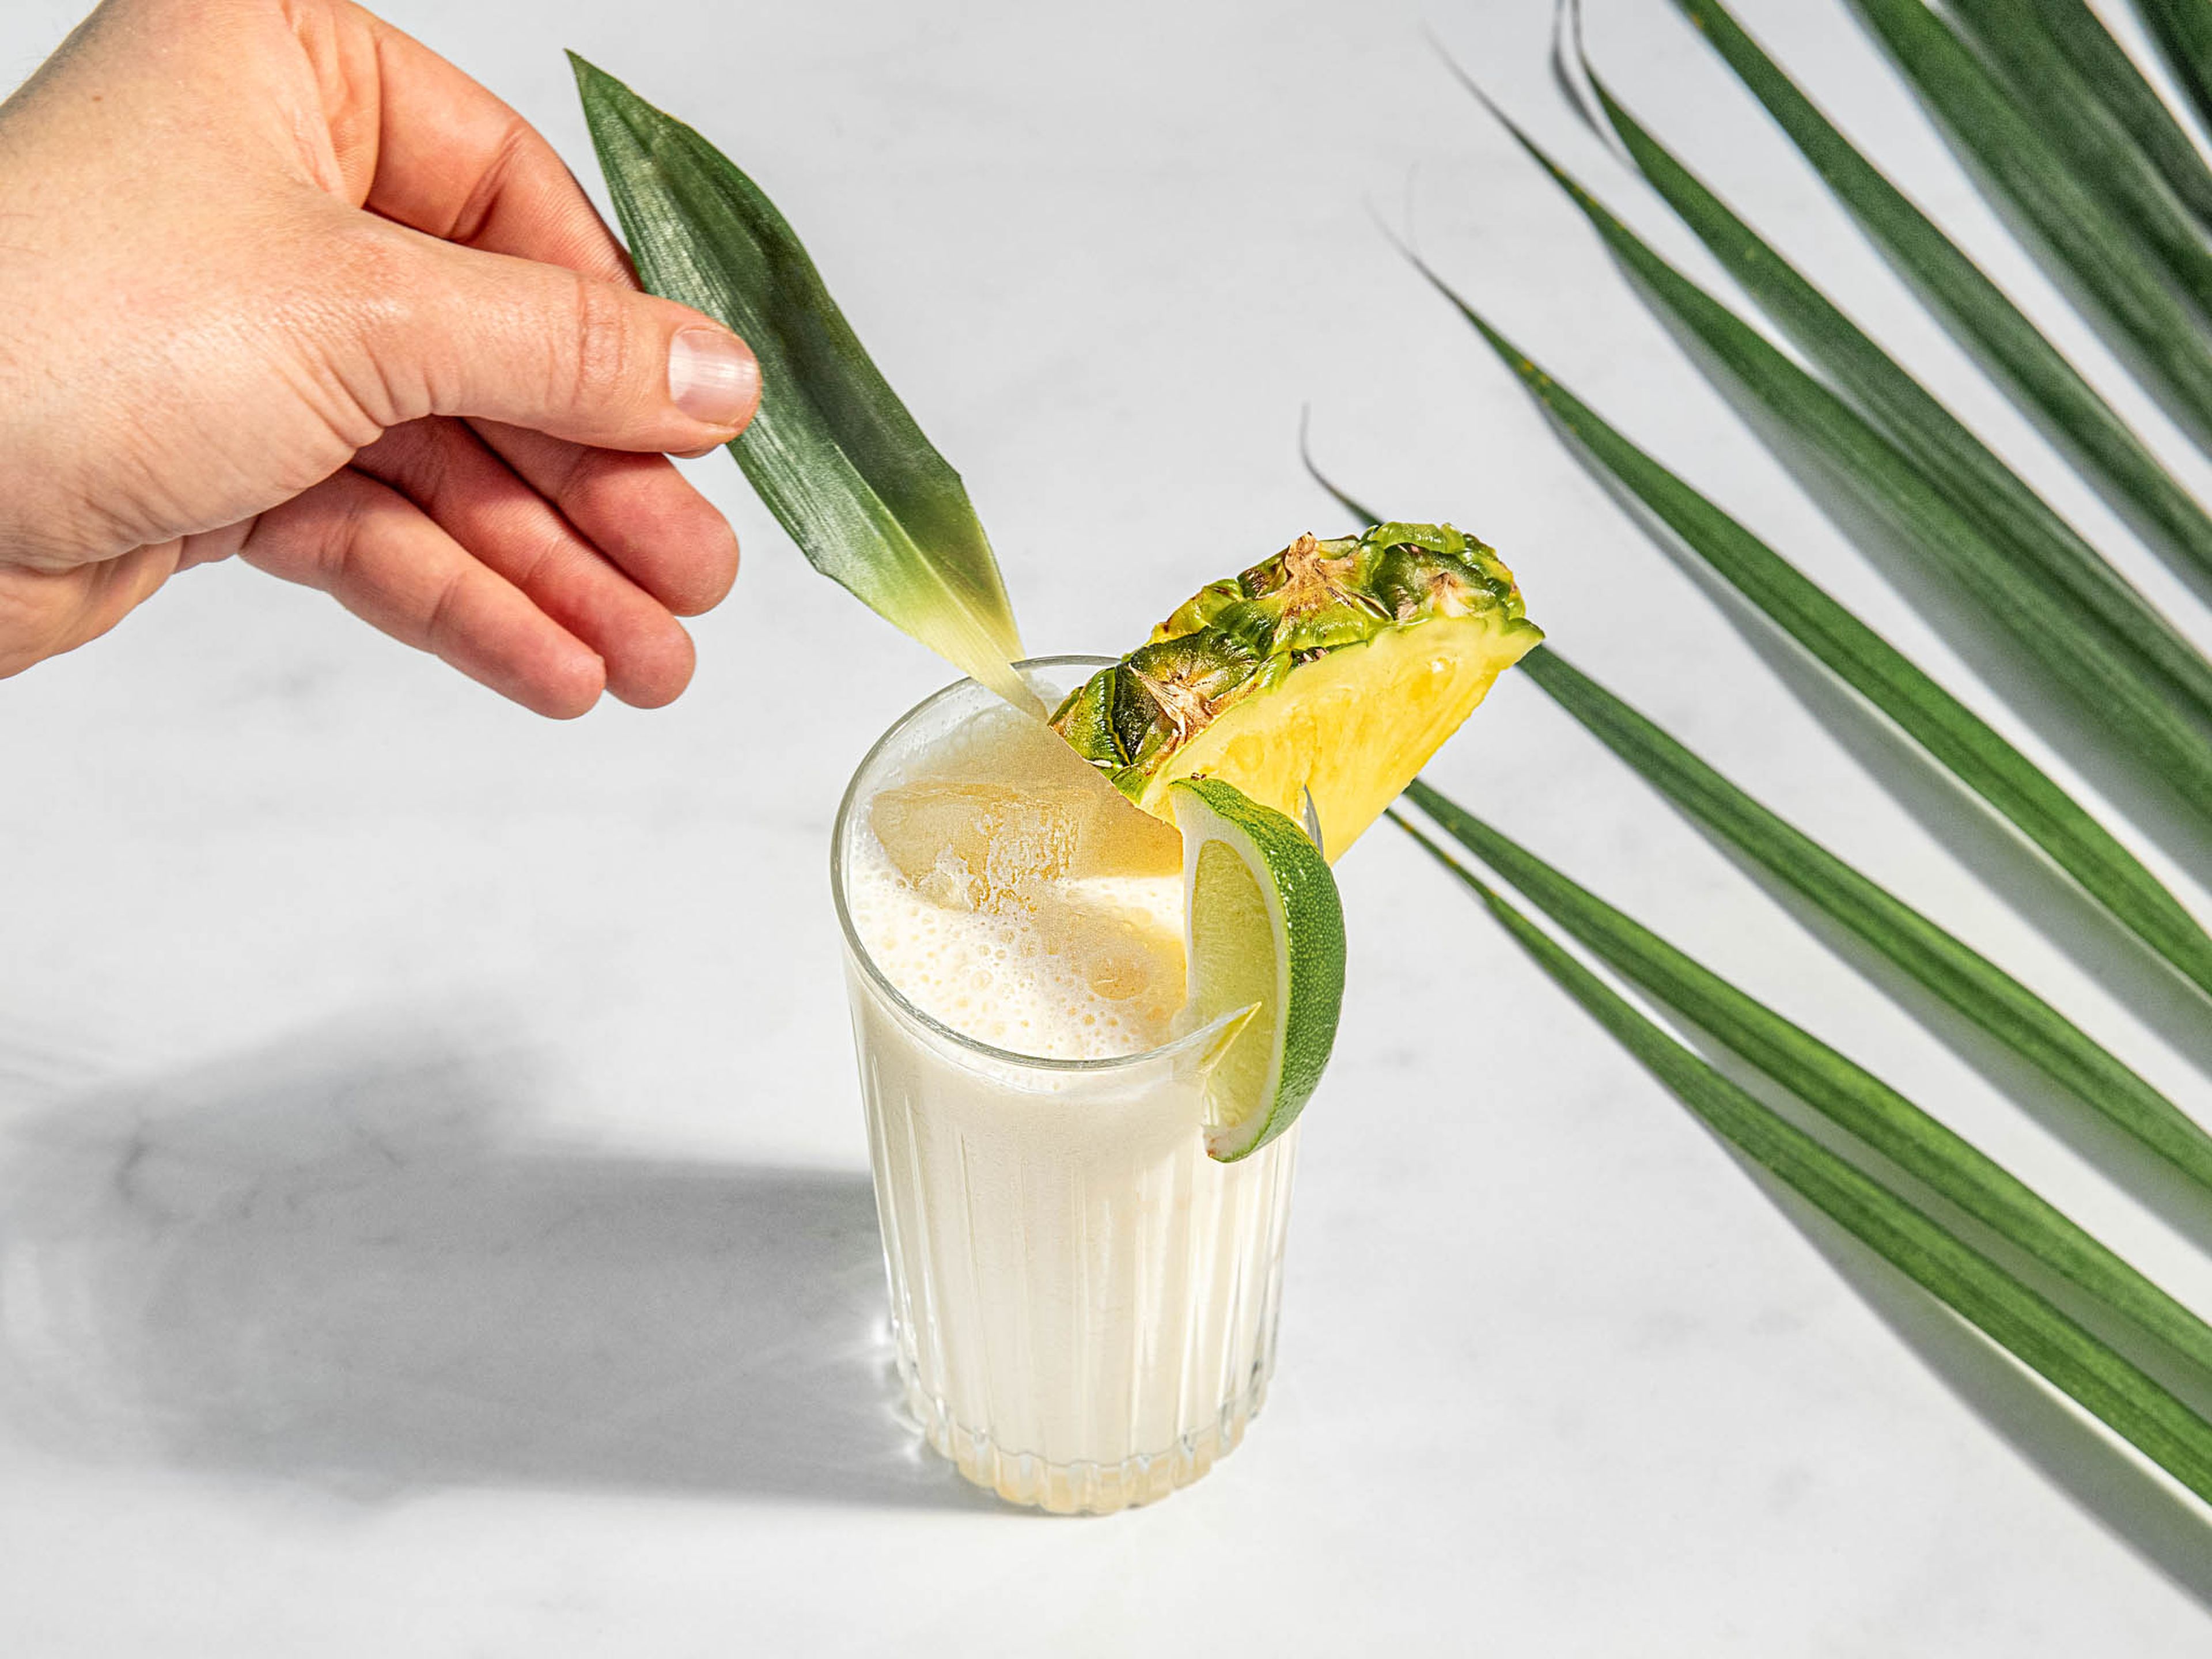 Eiswürfel in hohe Gläser geben und den Ananas-Kokos-Shake darübergießen. Mit Ananasblatt, Ananasscheiben und Limettenspalten servieren. Prost!